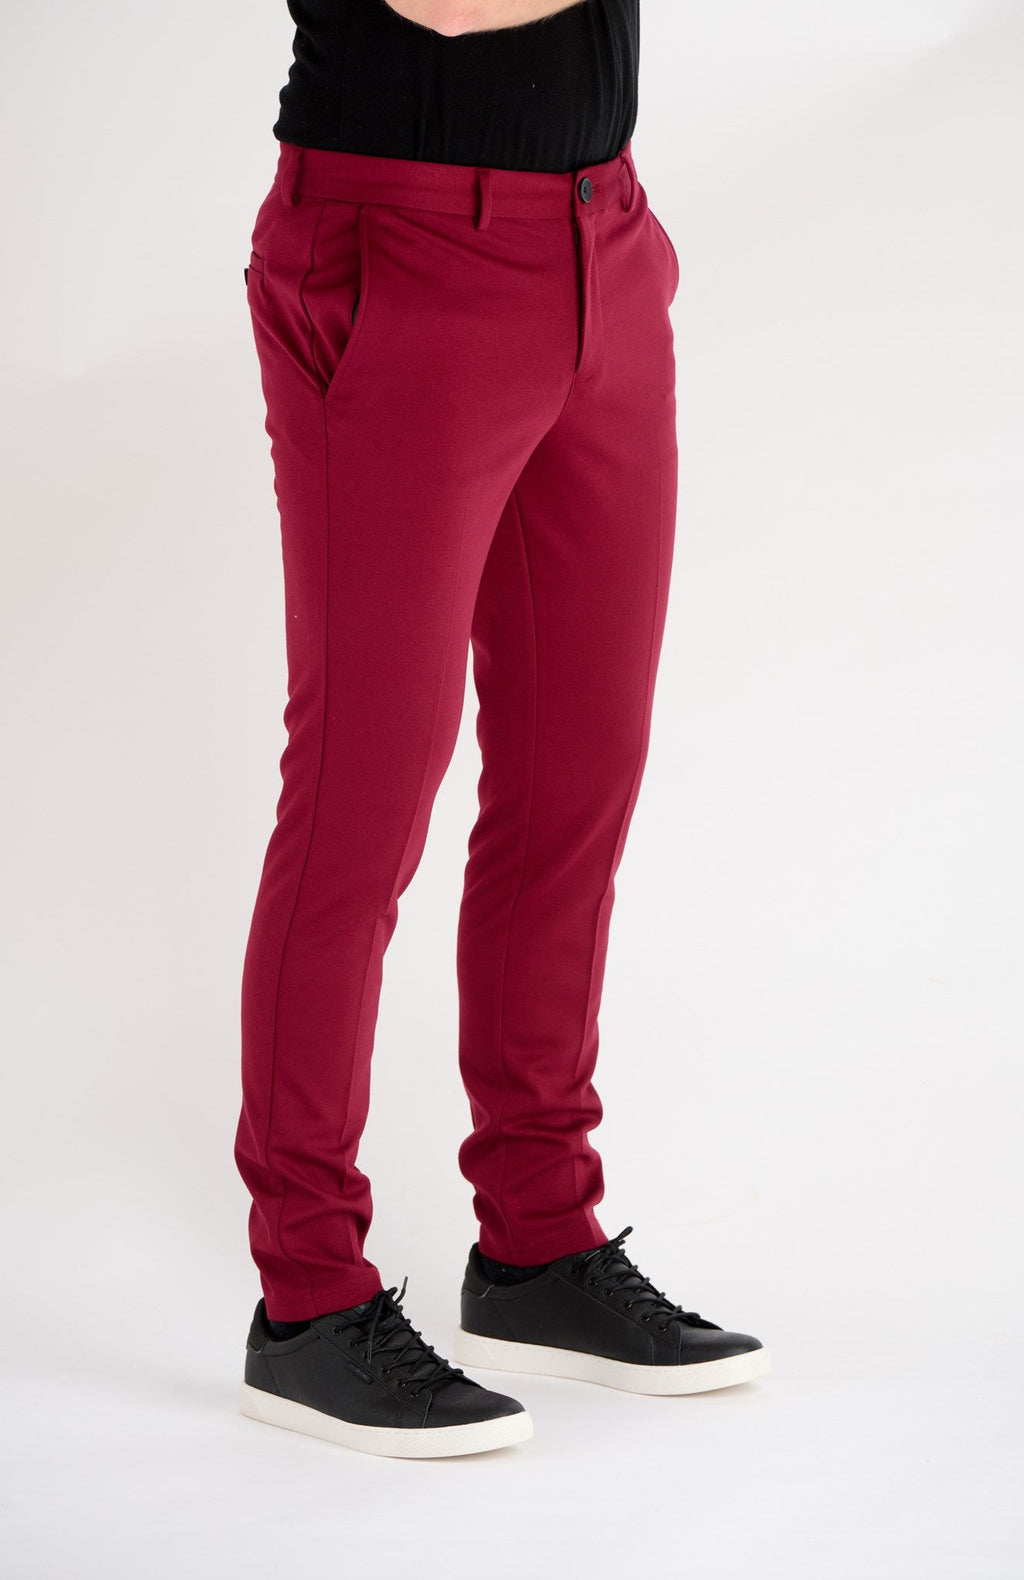 原始性能裤子 - 深红色